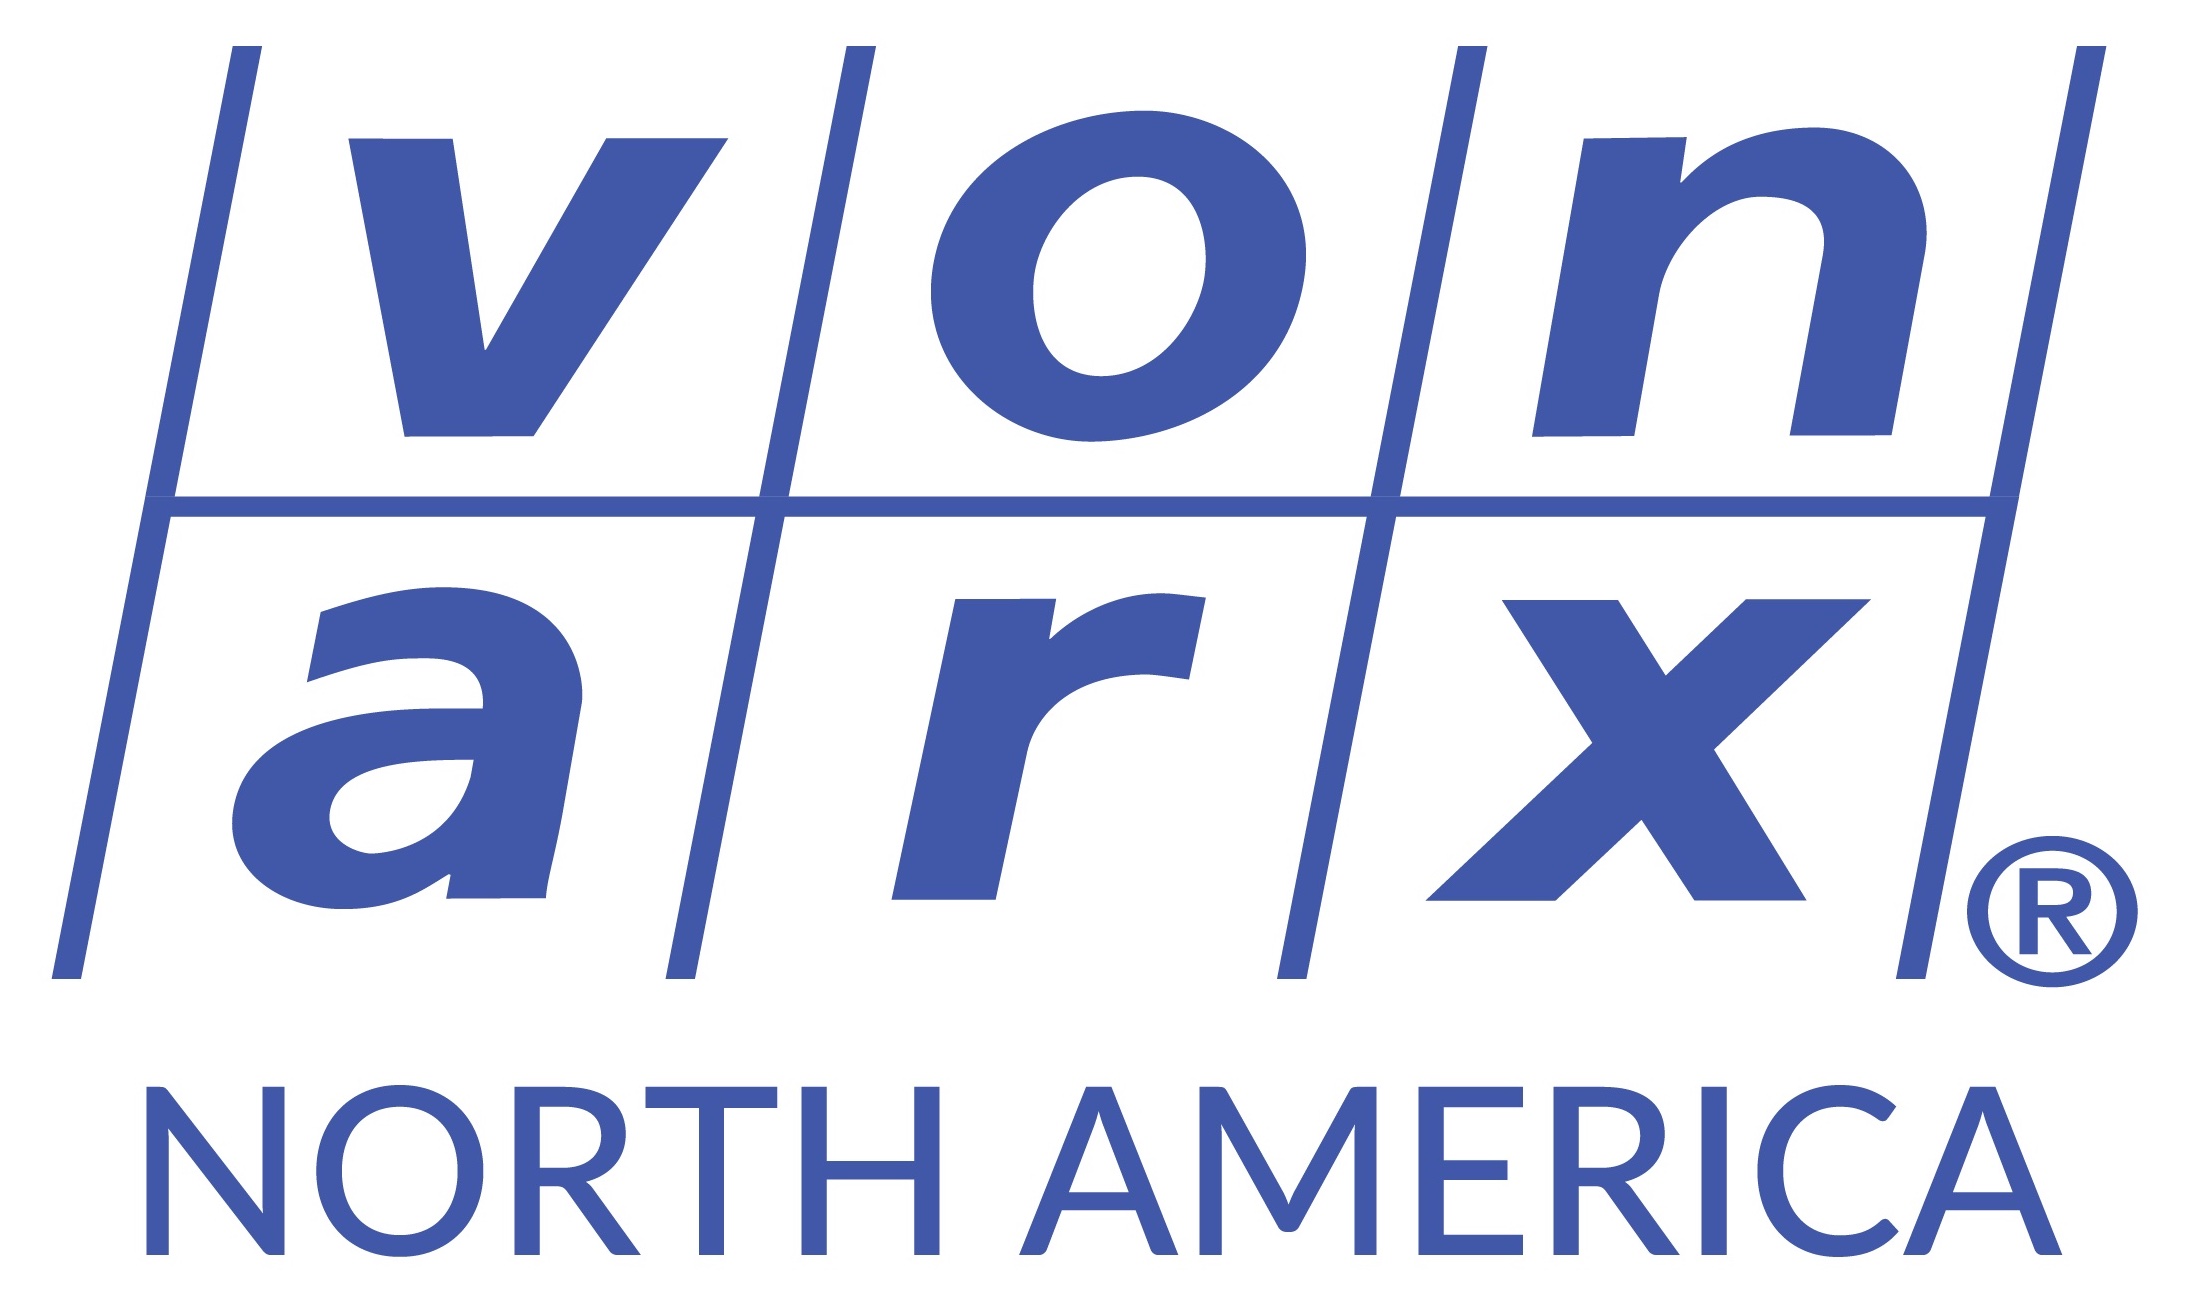 Von Arx North America